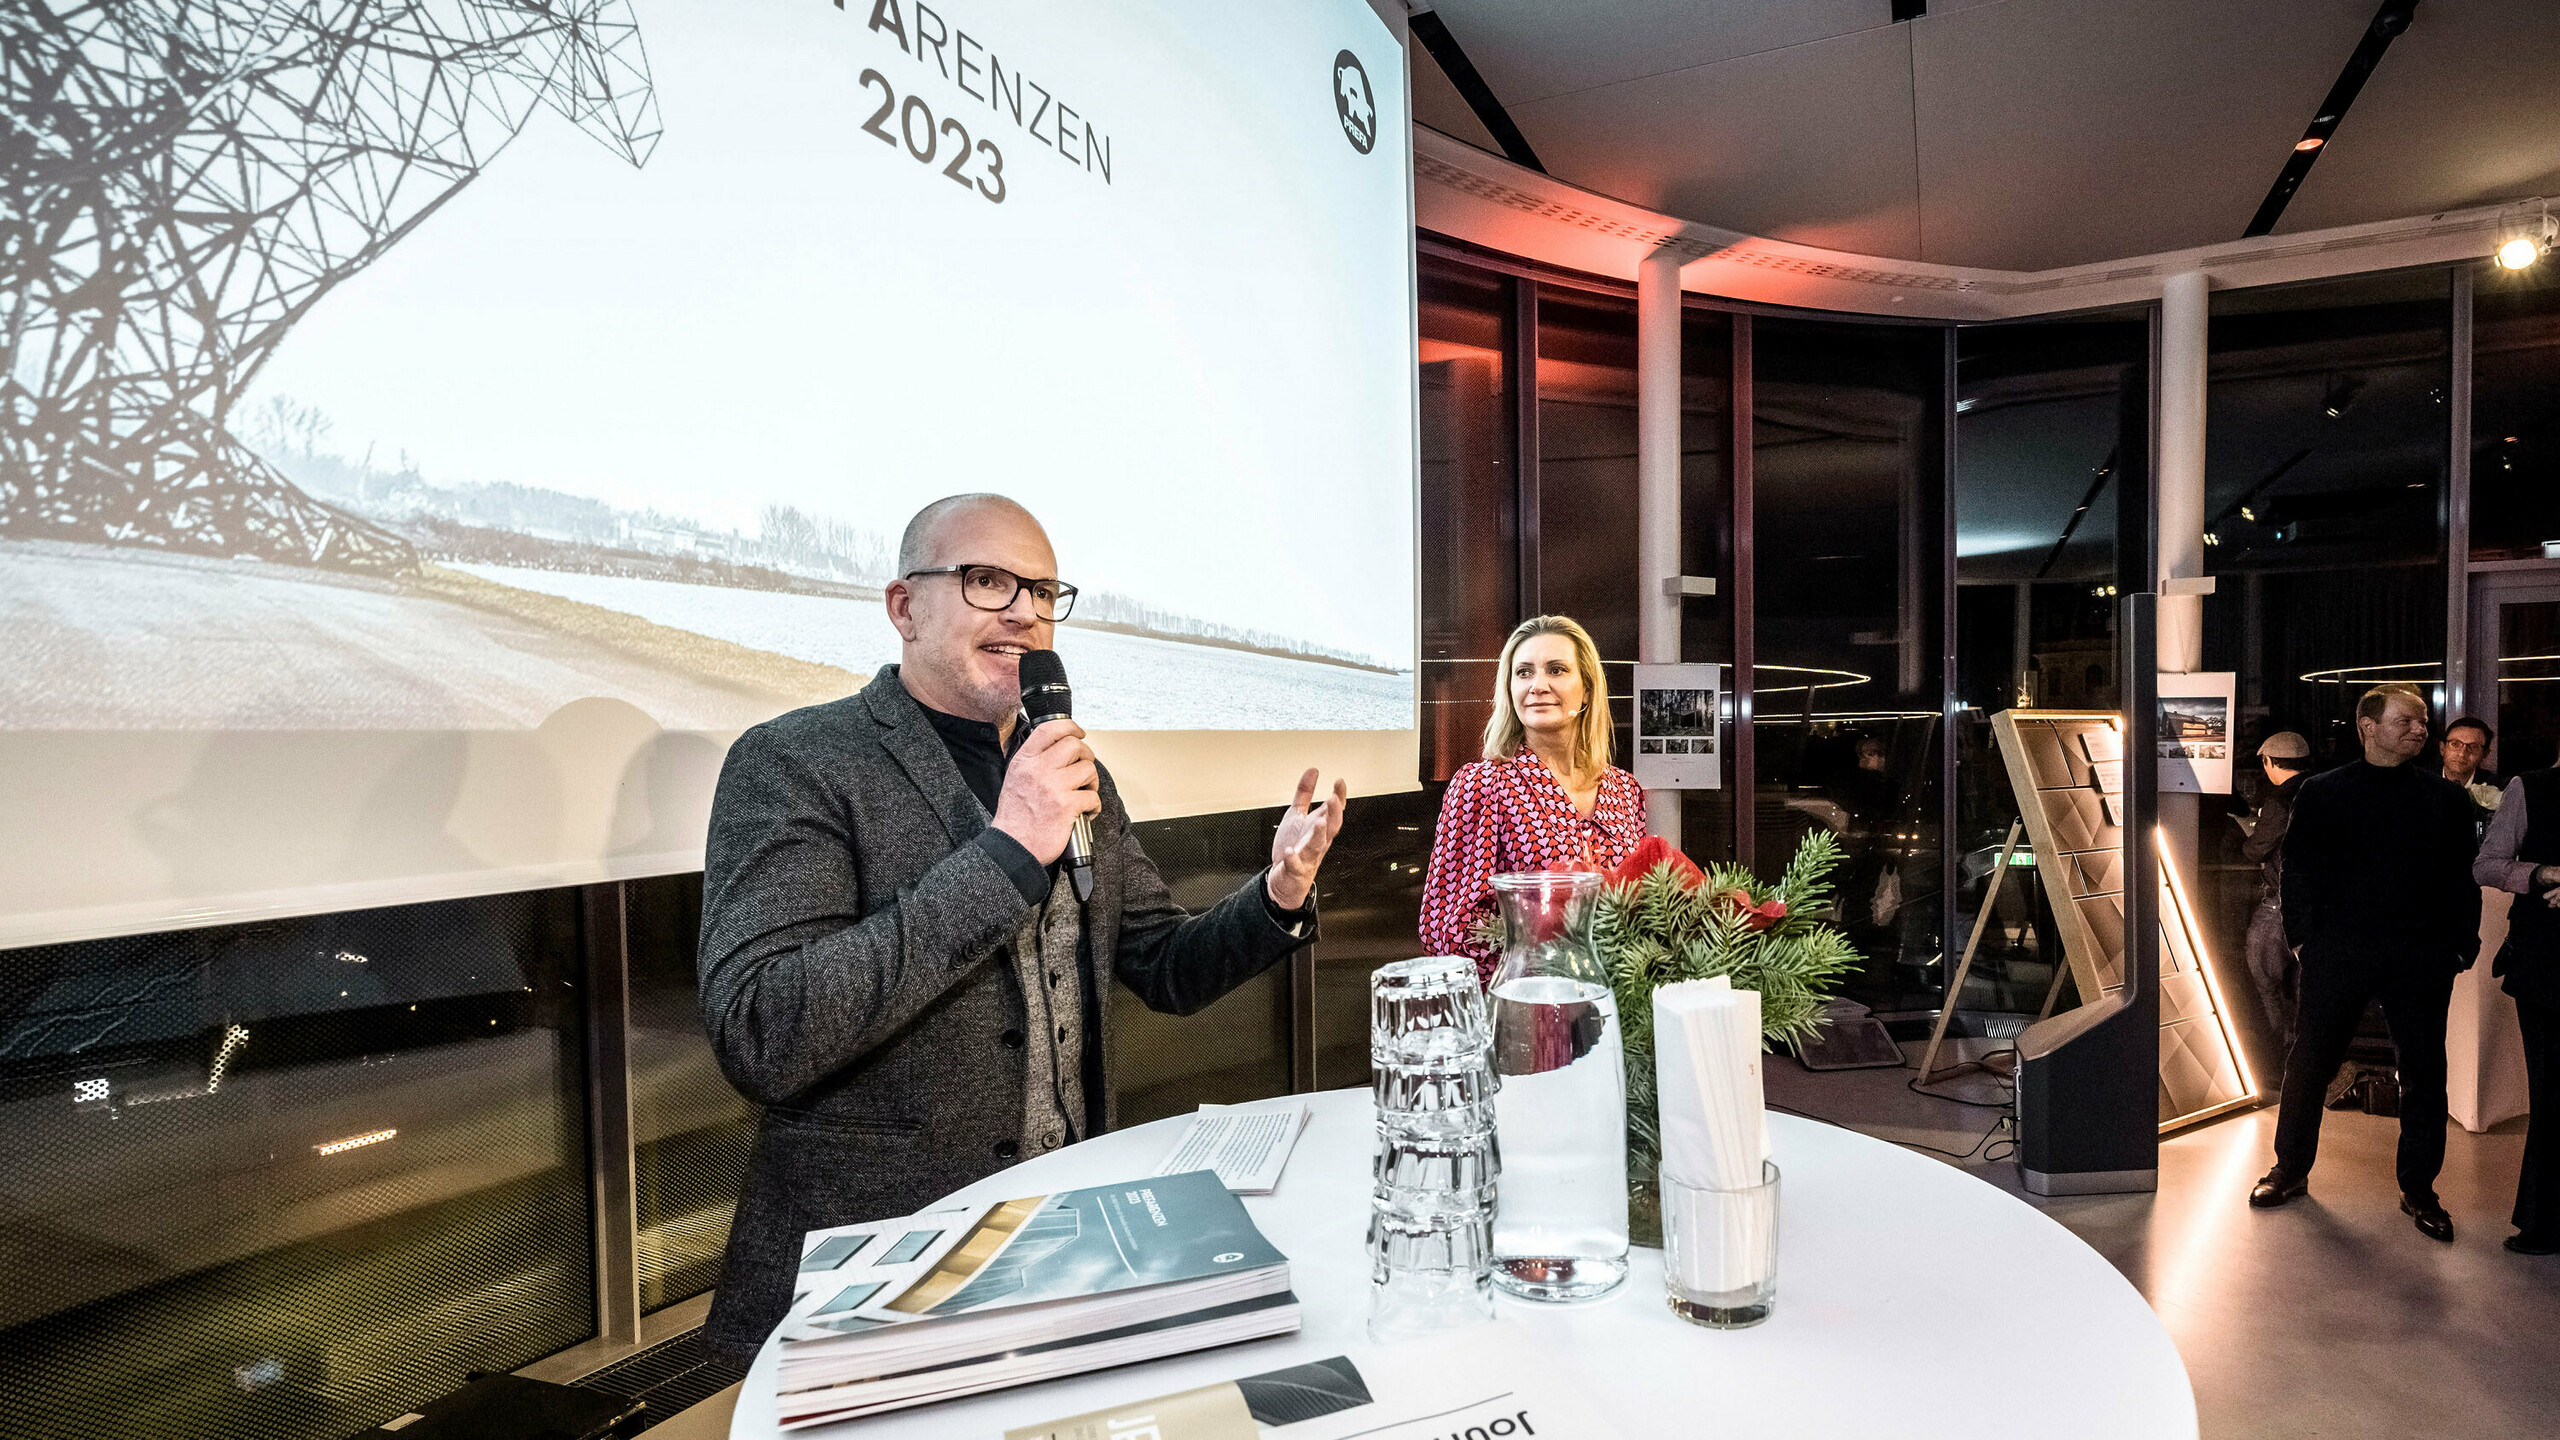 Jürgen Jungmair et les présentatrice Angelika Niedetzky pendant la soirée des PREFARENZEN 2023.